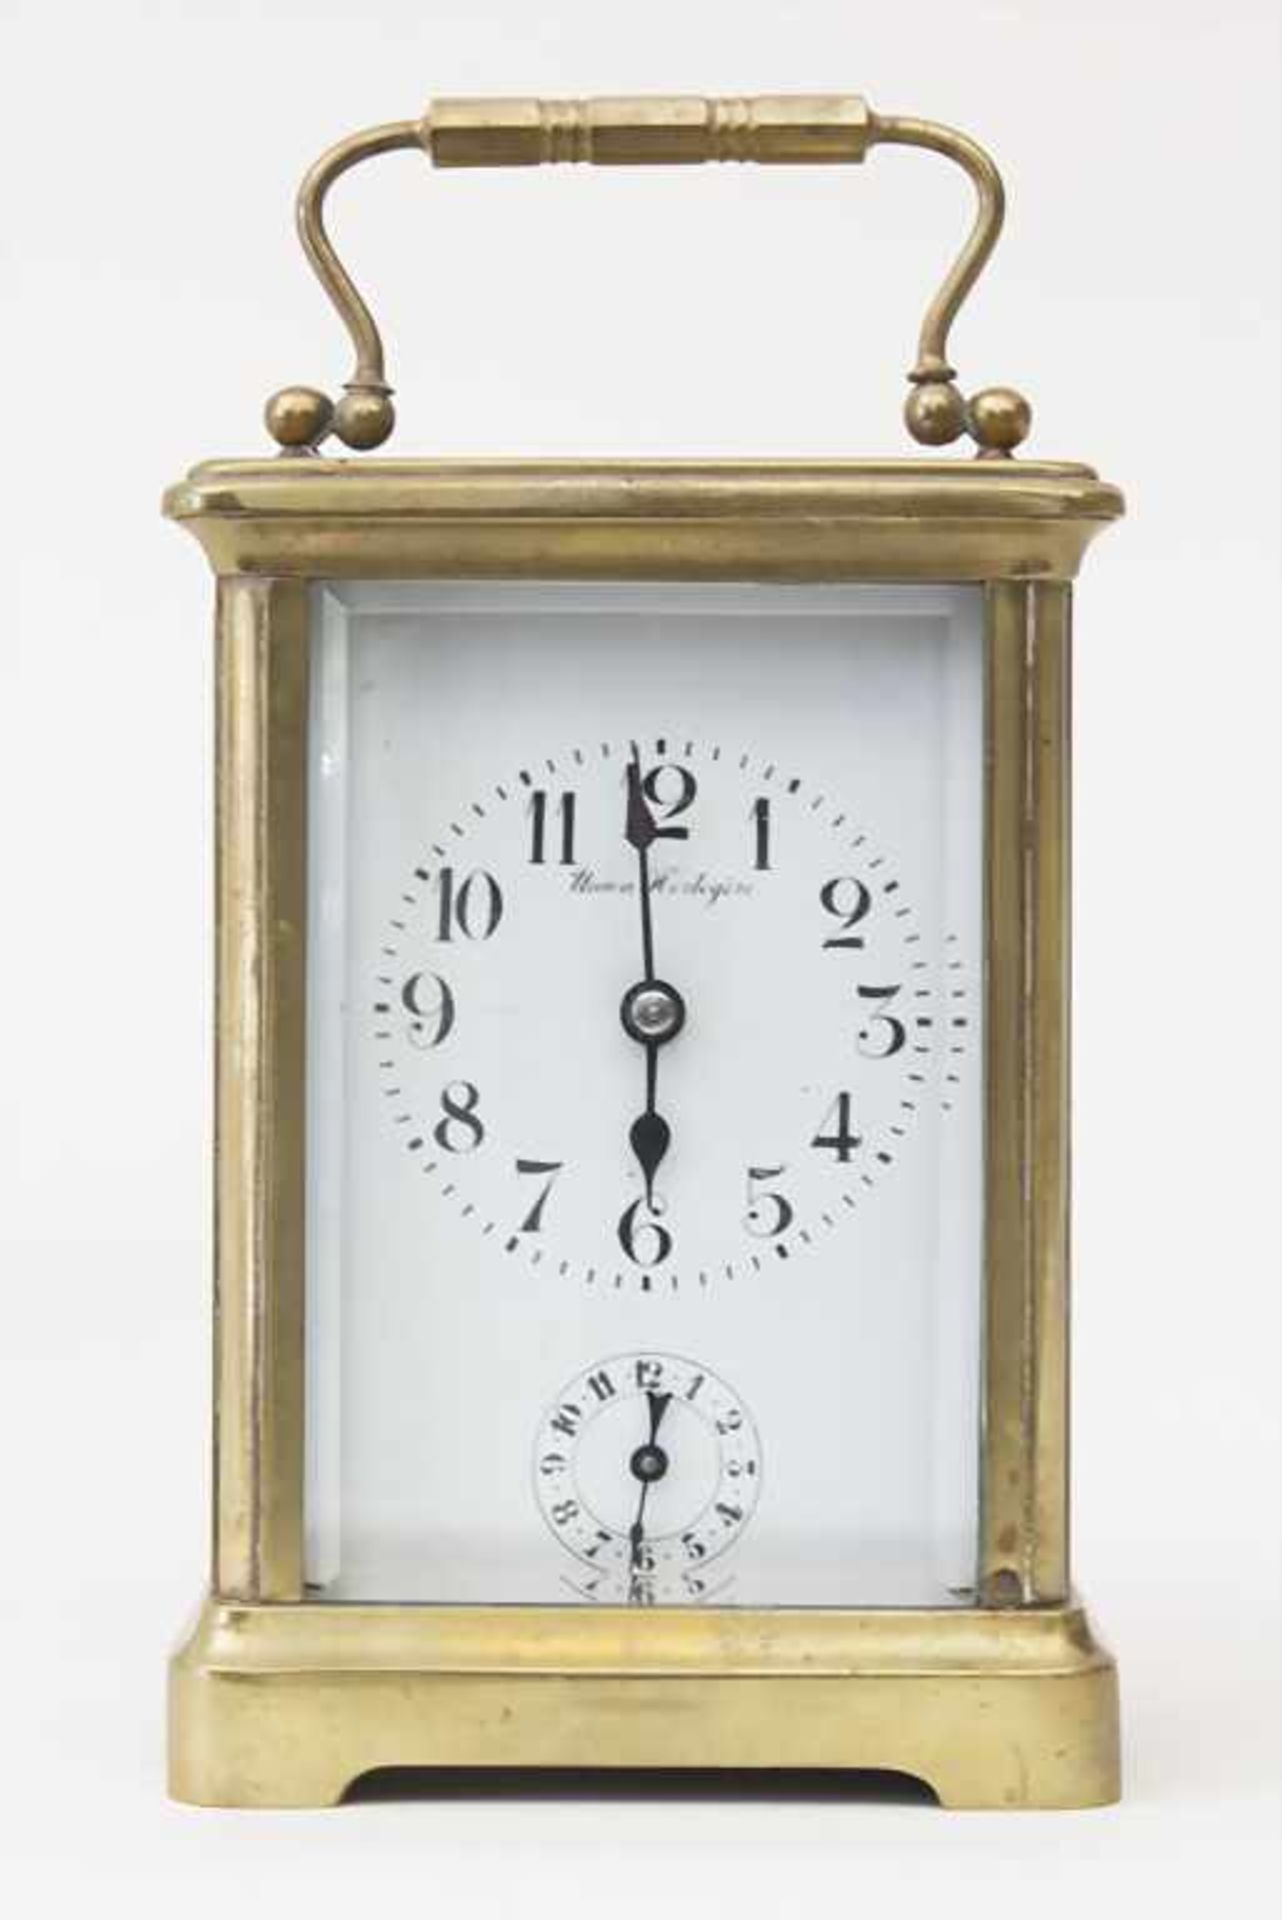 Reiseuhr mit Wecker / A travellers alarm clock, Union Horlogère um 1900Gehäuse: Rundum verglastes